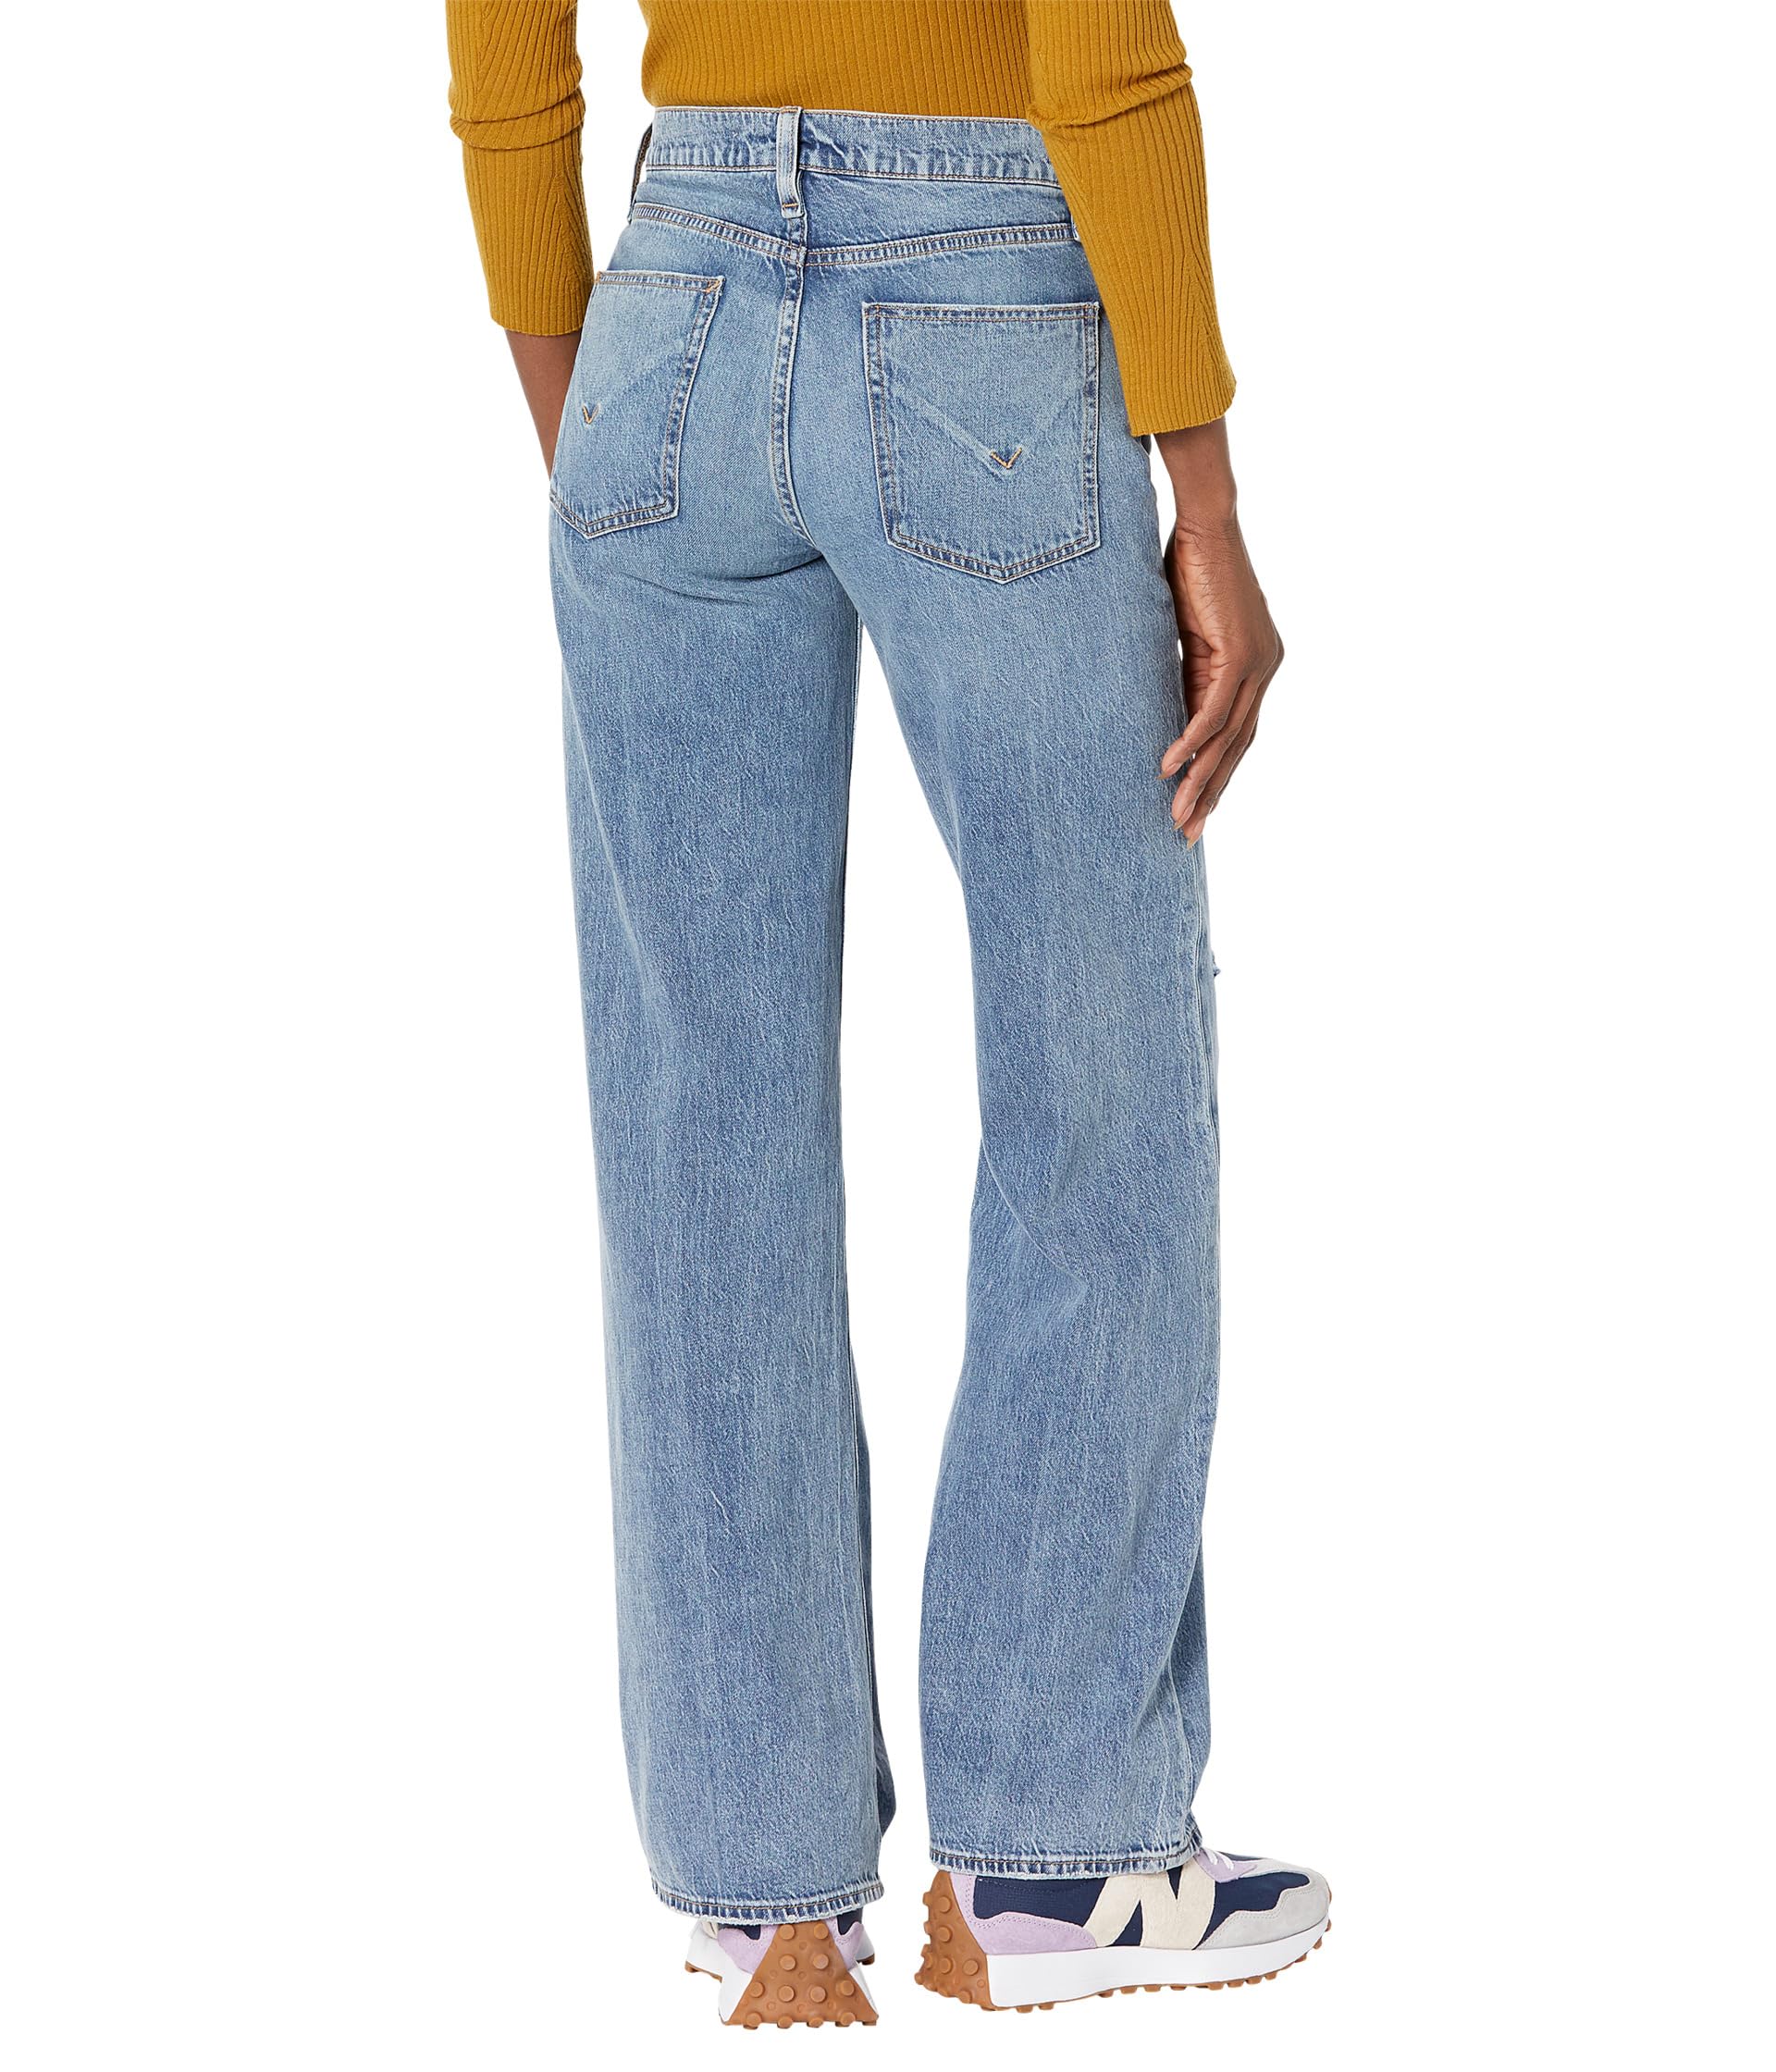 Джинсы Rosie с высокой талией и широкими джинсами в стиле Golden Destructed от Hudson Hudson Jeans